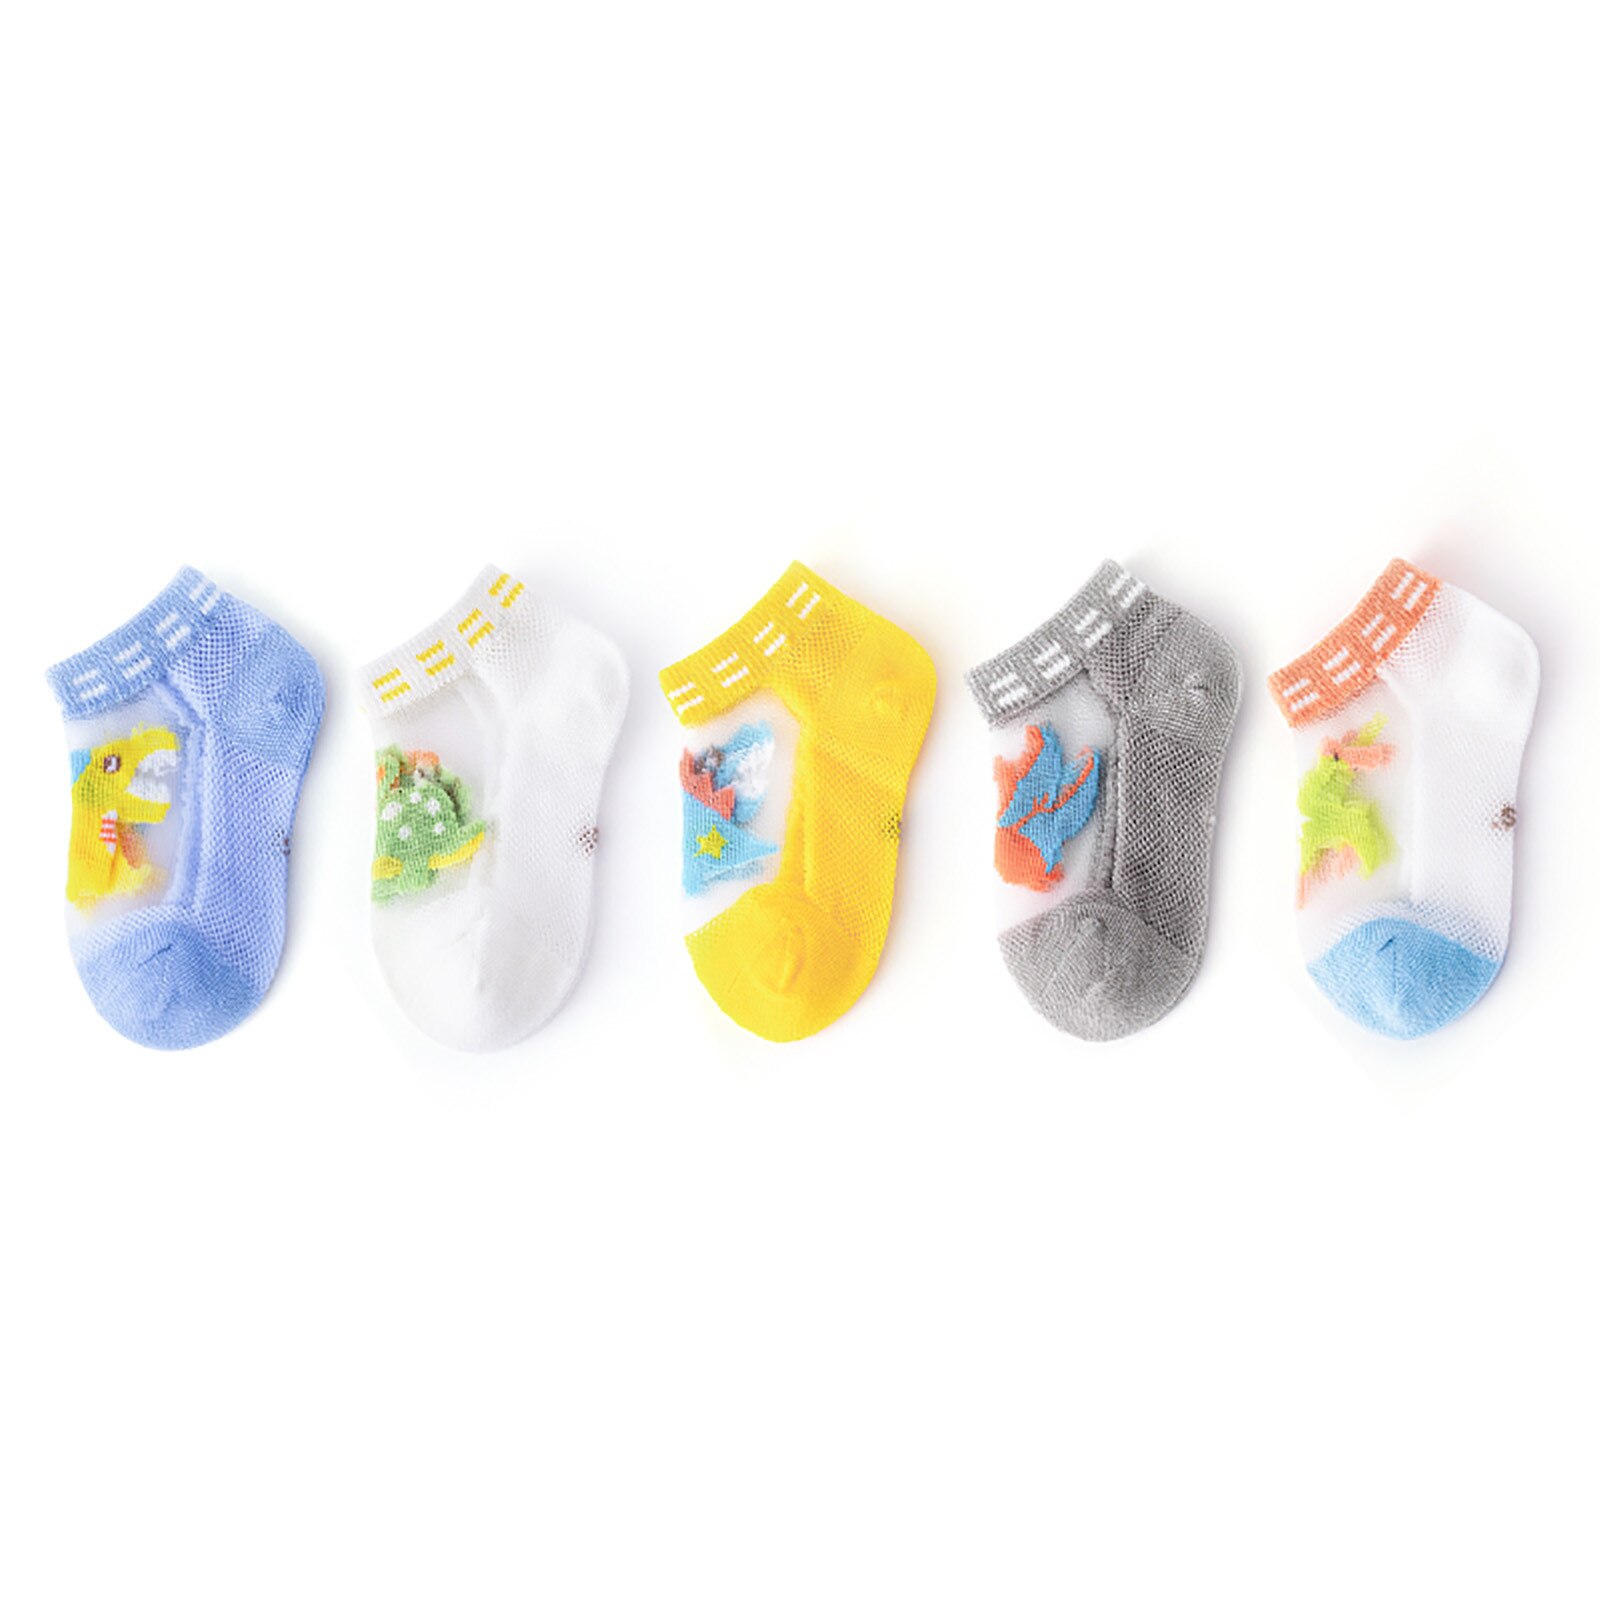 5 Pcs/Lot Children's Socks For Girls Boys Socks Cotton Cozy Breathable Summer Glass Filamen Baby Non-slip Sock носки милые E1: 1-3T